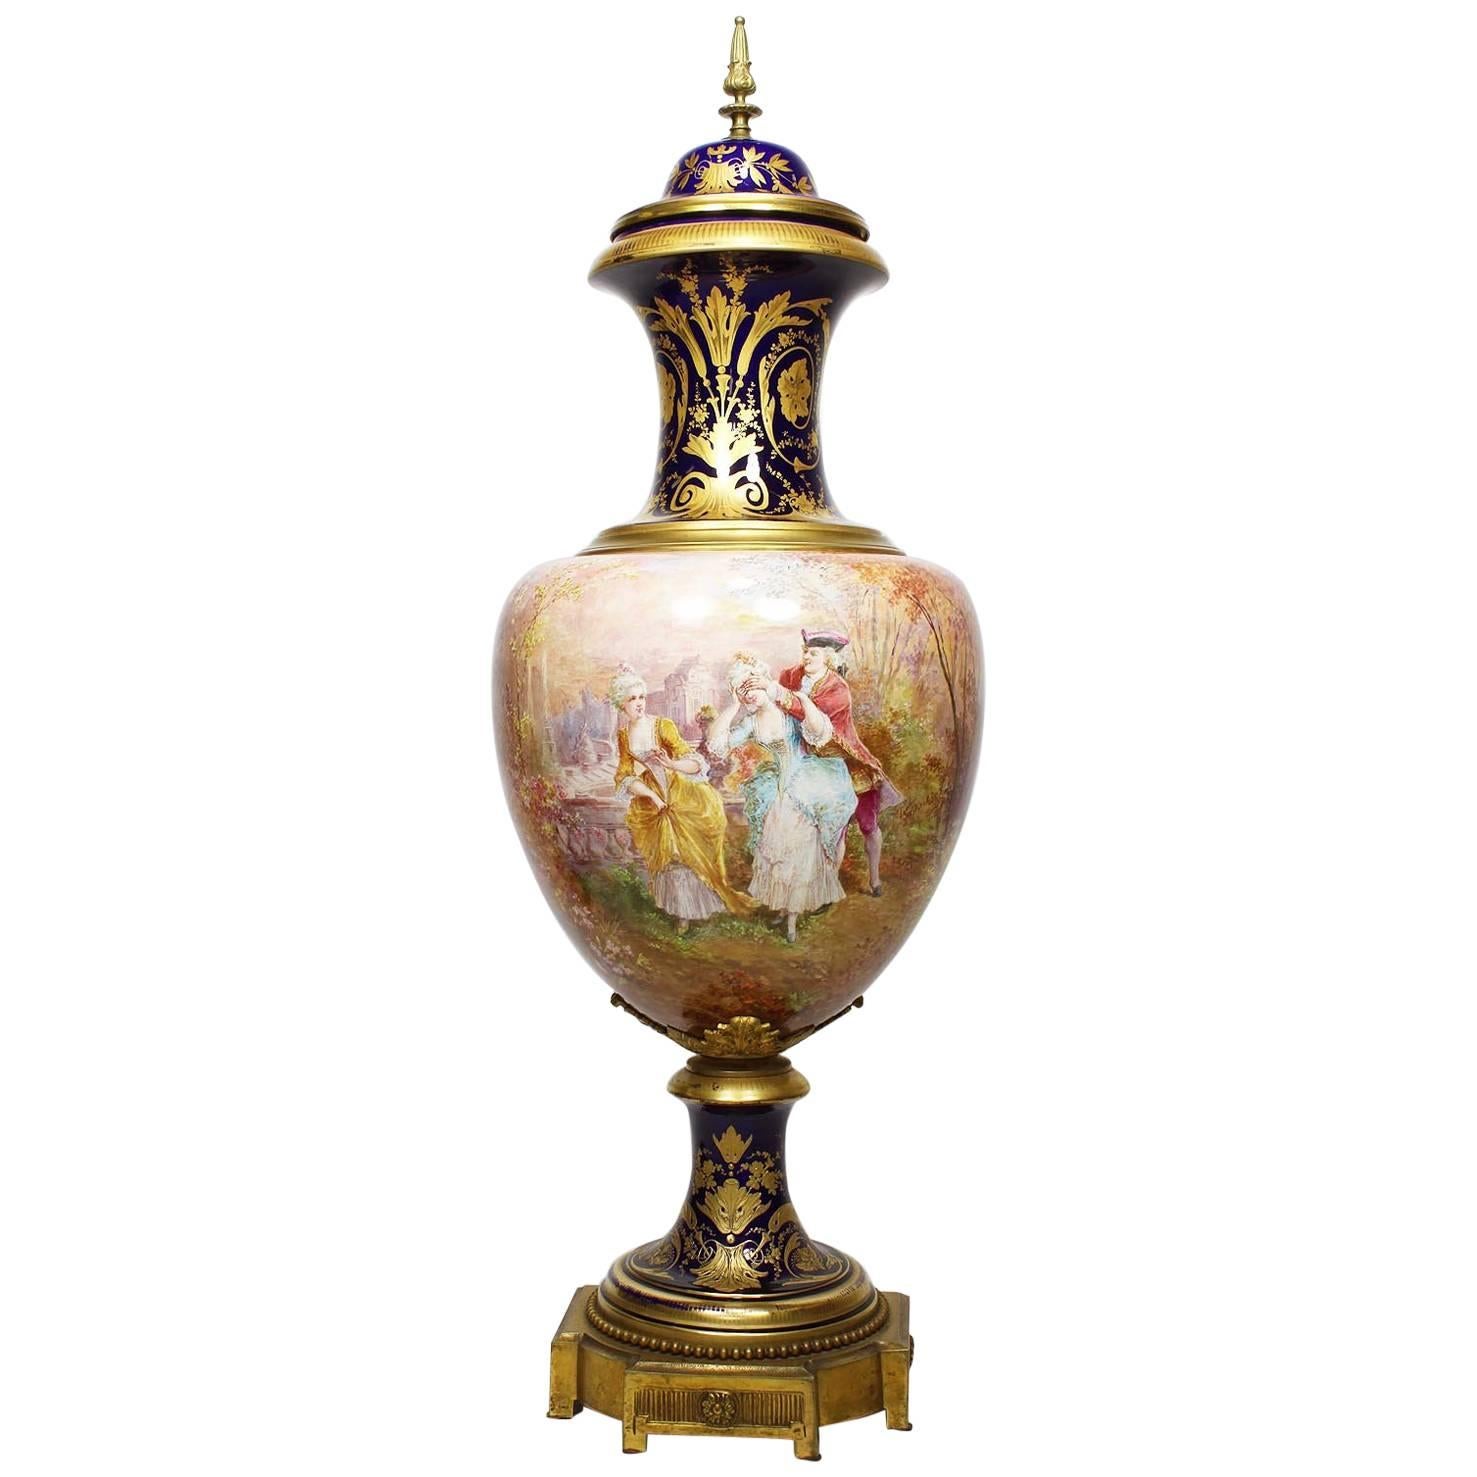 Französische Porzellanurne im Svres-Stil Napoleon III. des 19. Jahrhunderts, signiert Ch Fuchs